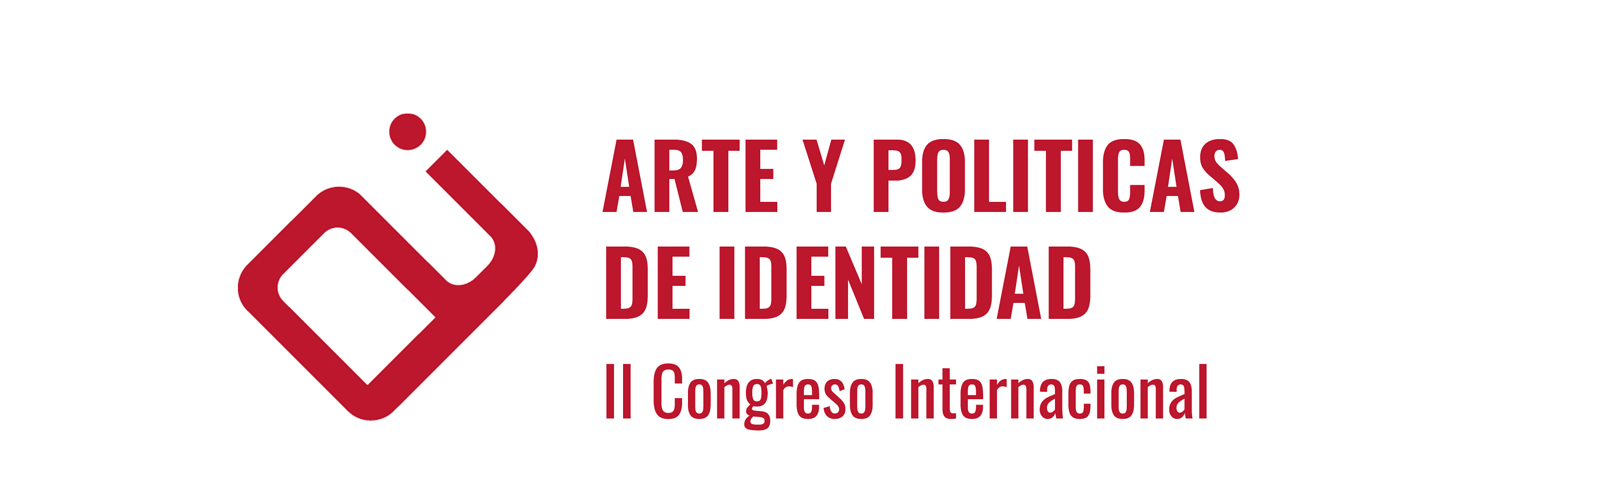 La Facultad de Bellas Artes de Murcia acoge el II Congreso Internacional de Arte y Políticas de Identidad